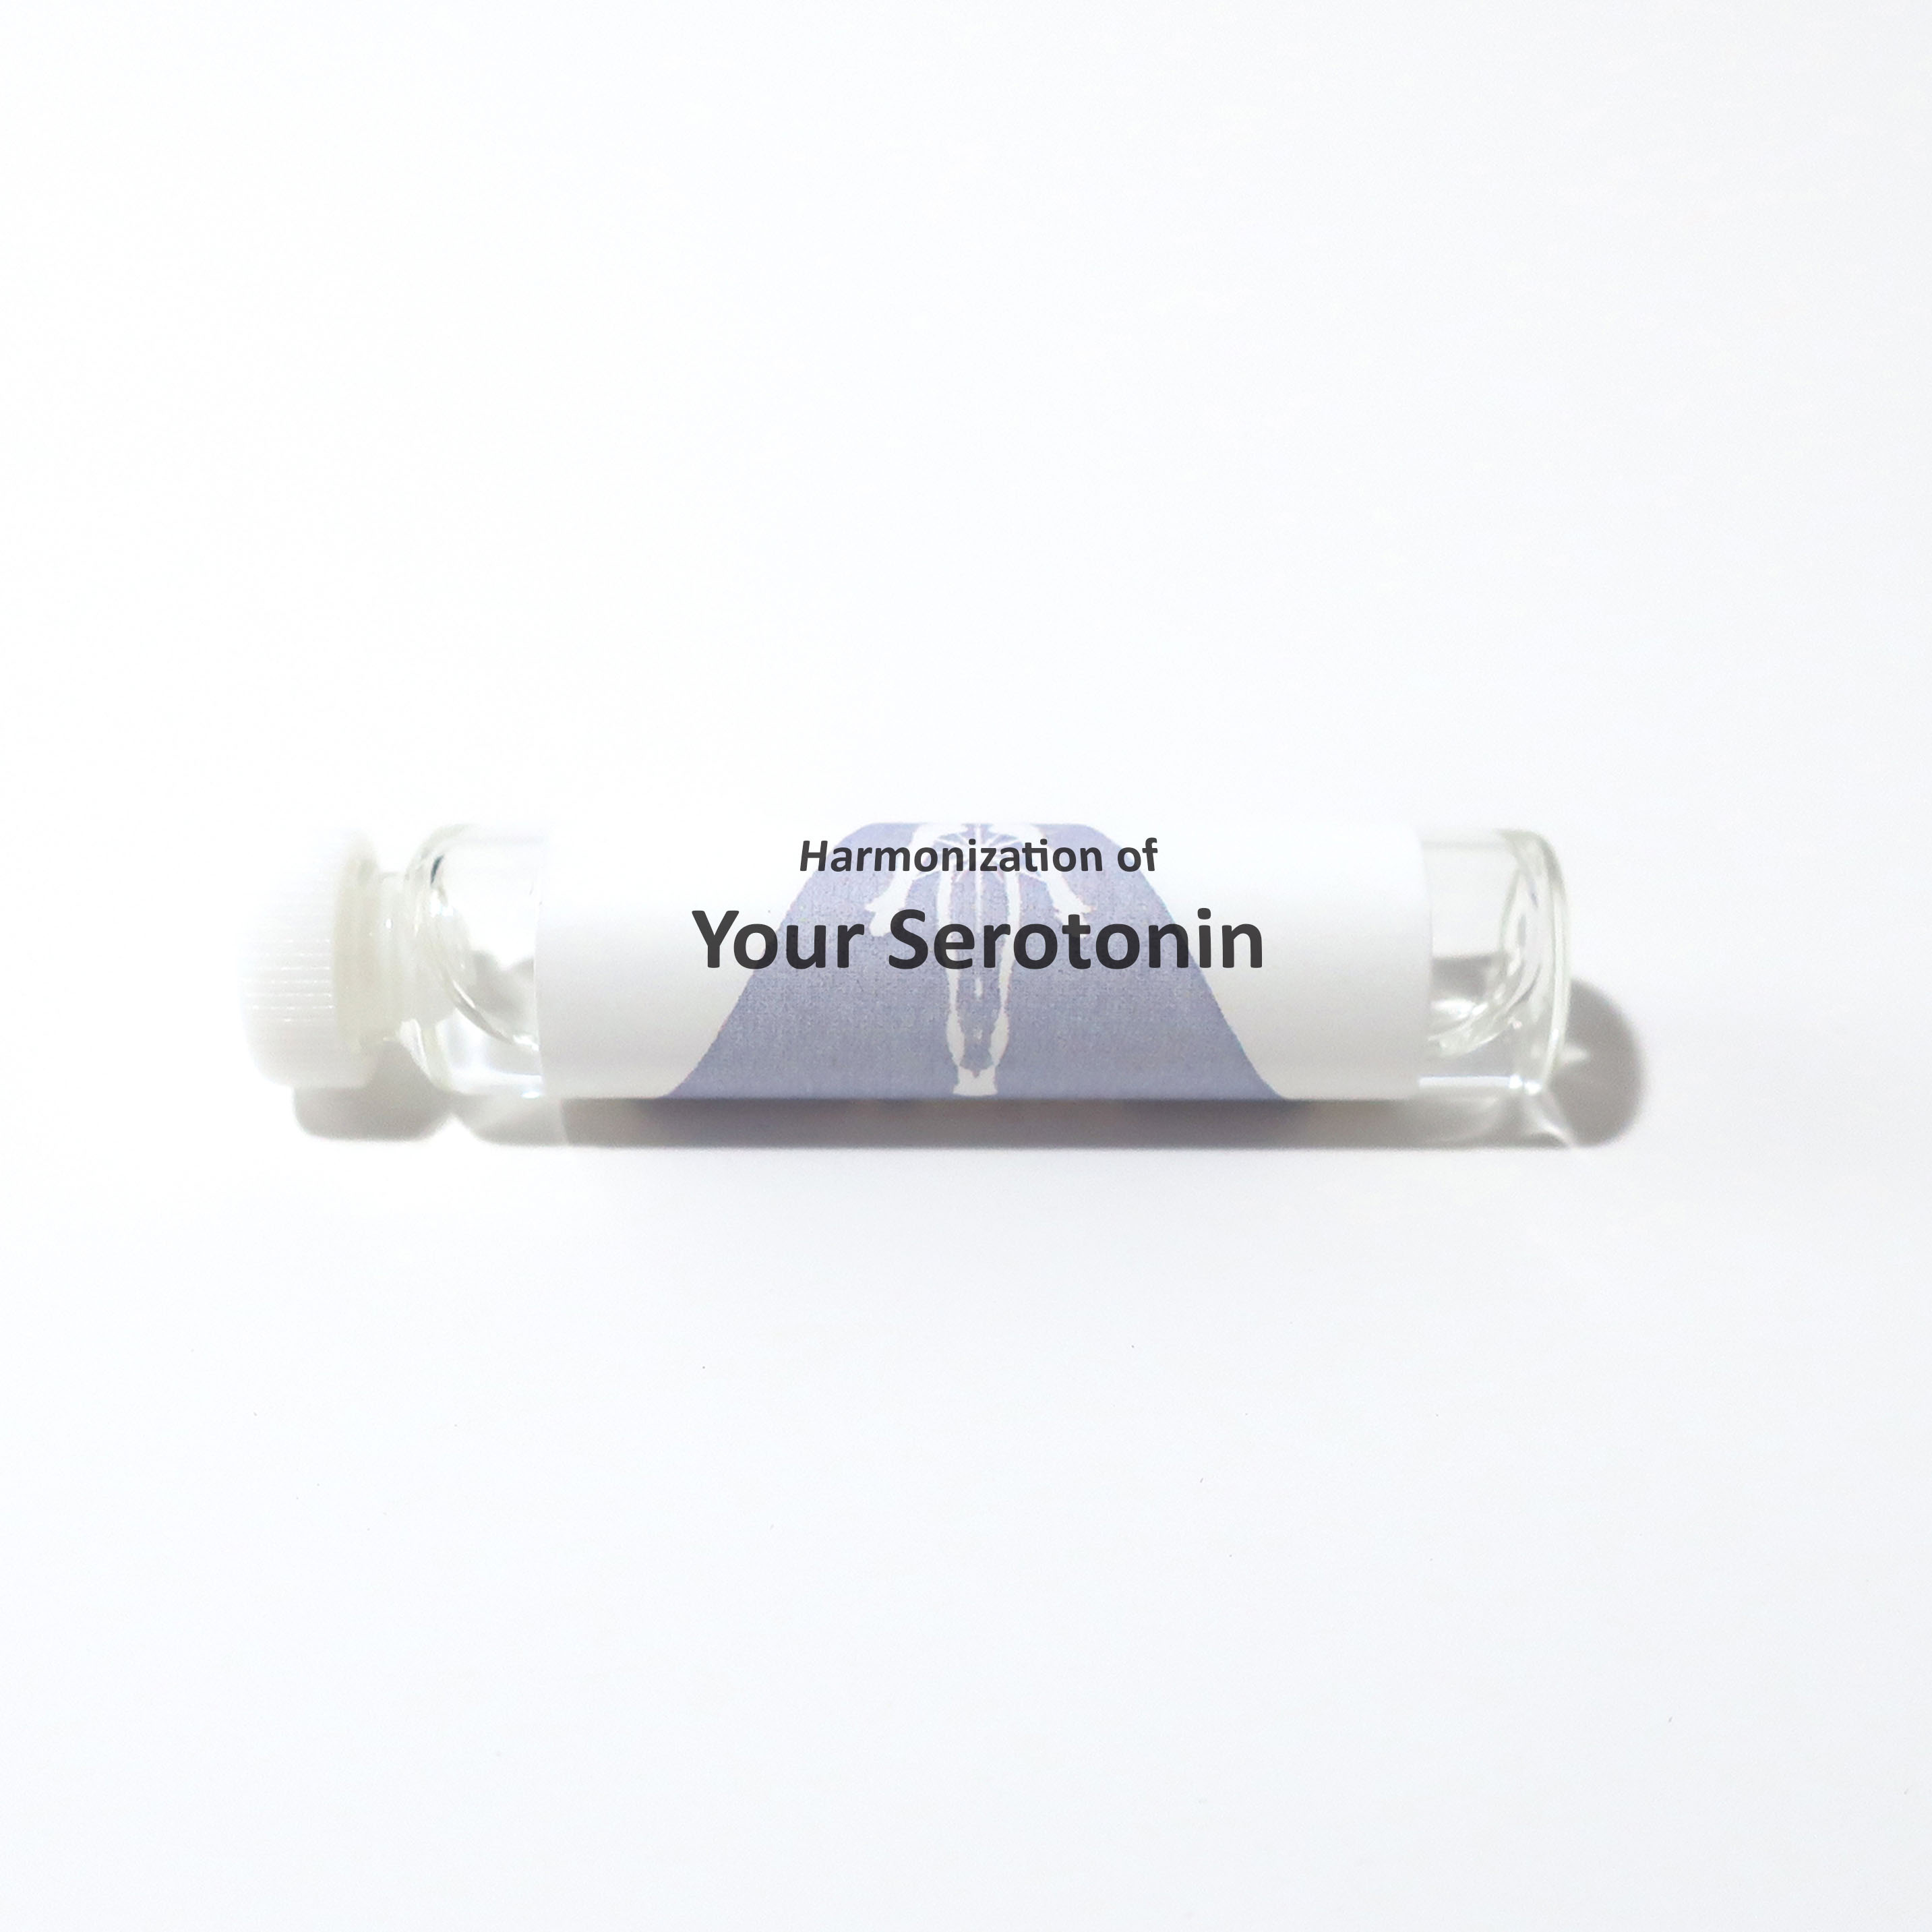 Your Serotonin